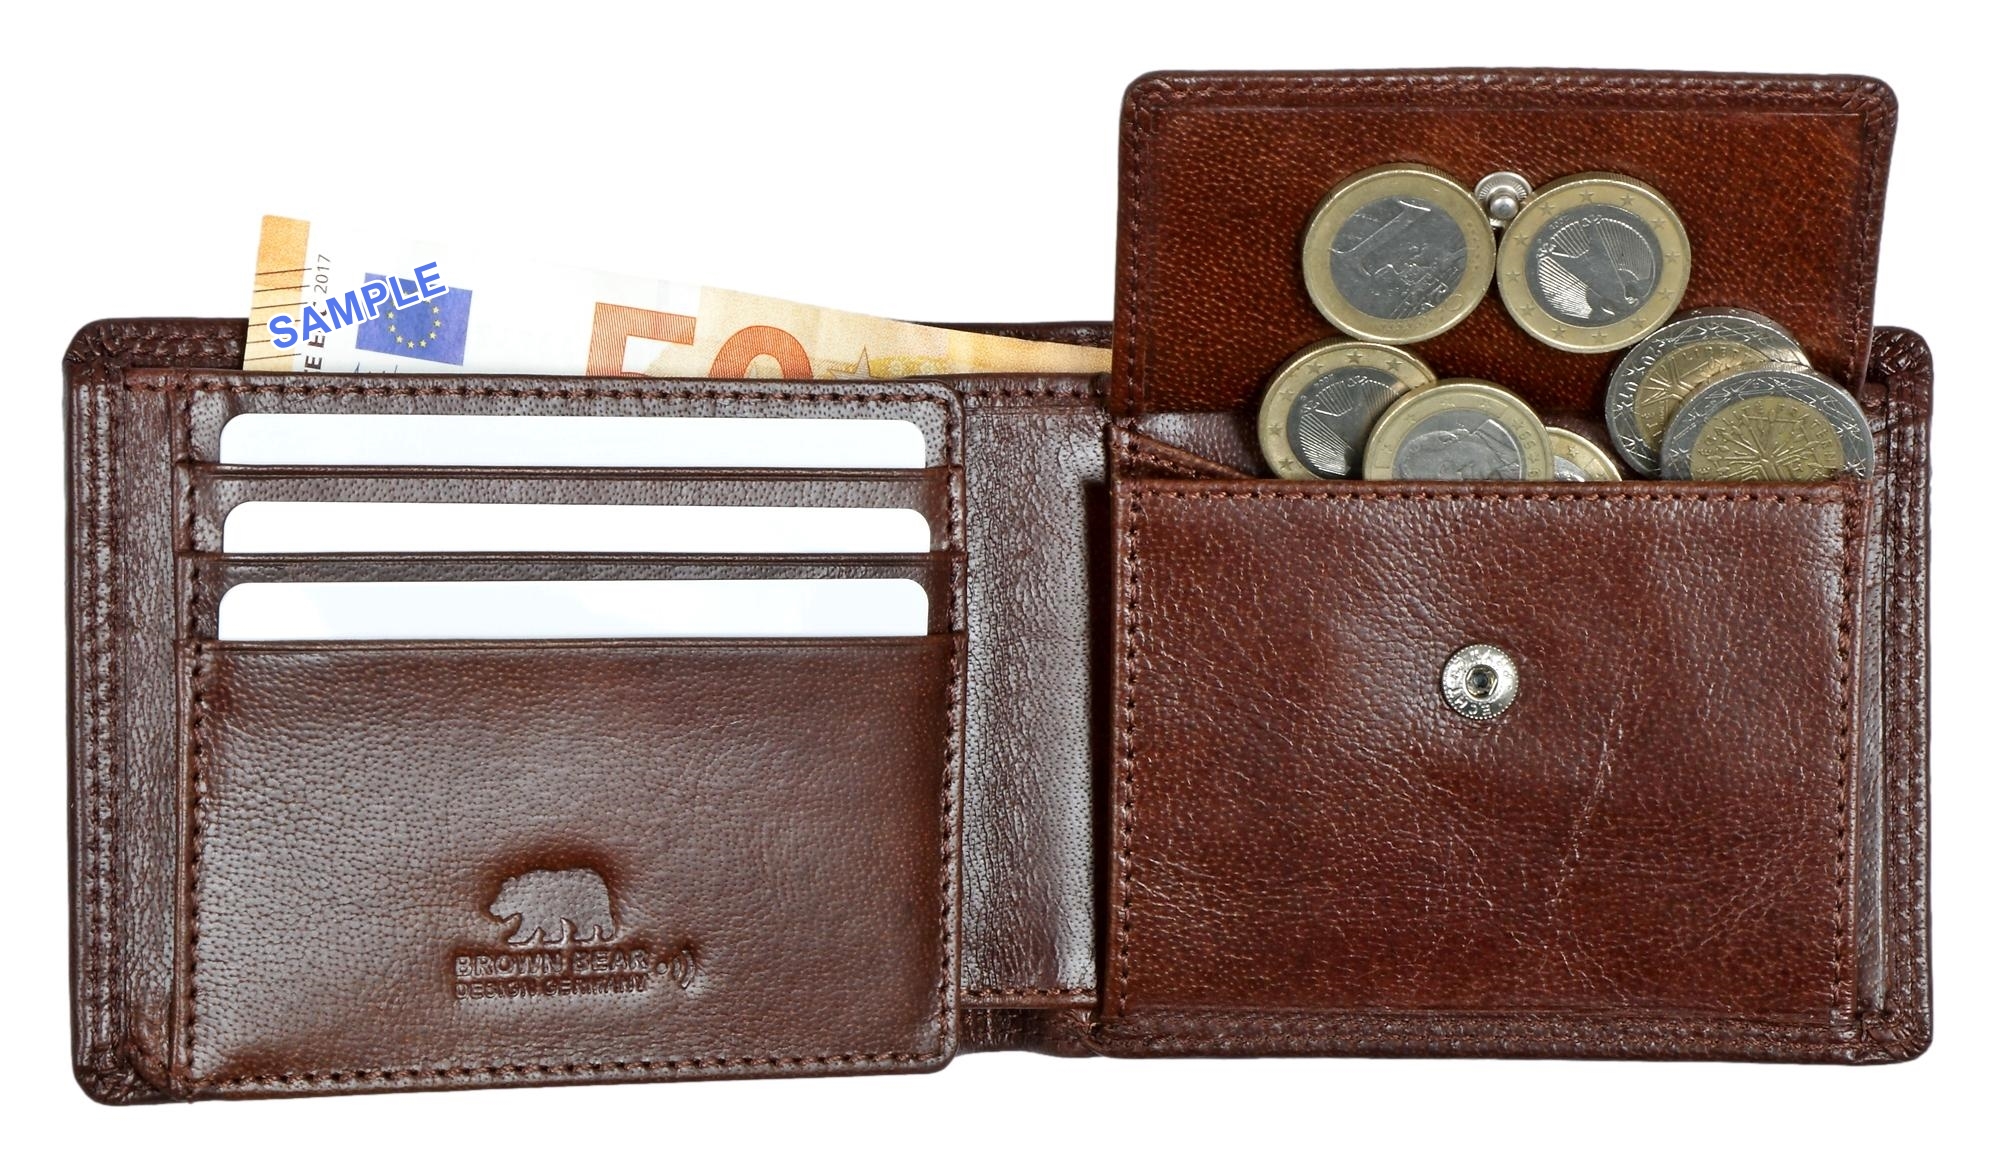 Brown Bear Classic 8061 - kleinere Geldbörse Braun